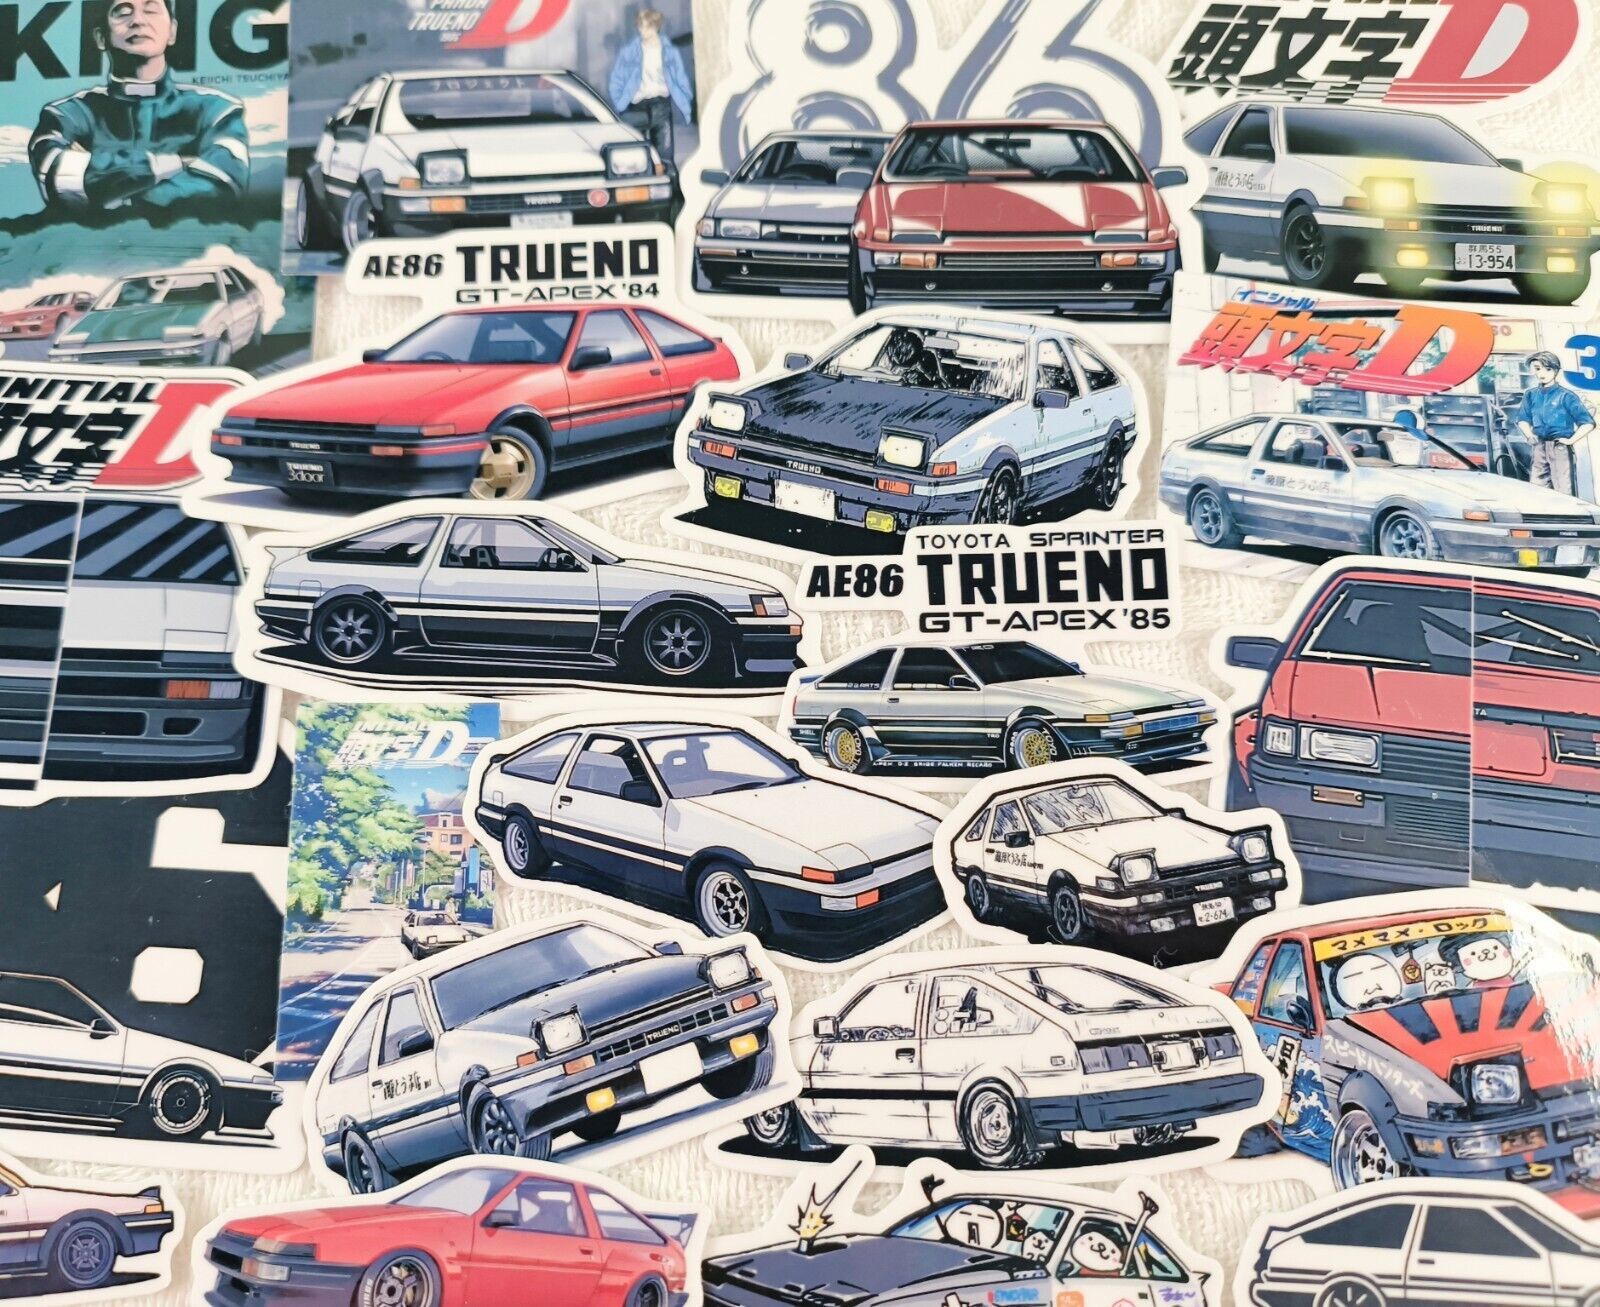 22pc Toyota Corolla AE86 Trueno Levin Vinyl Stickers for JDM drift legend fan